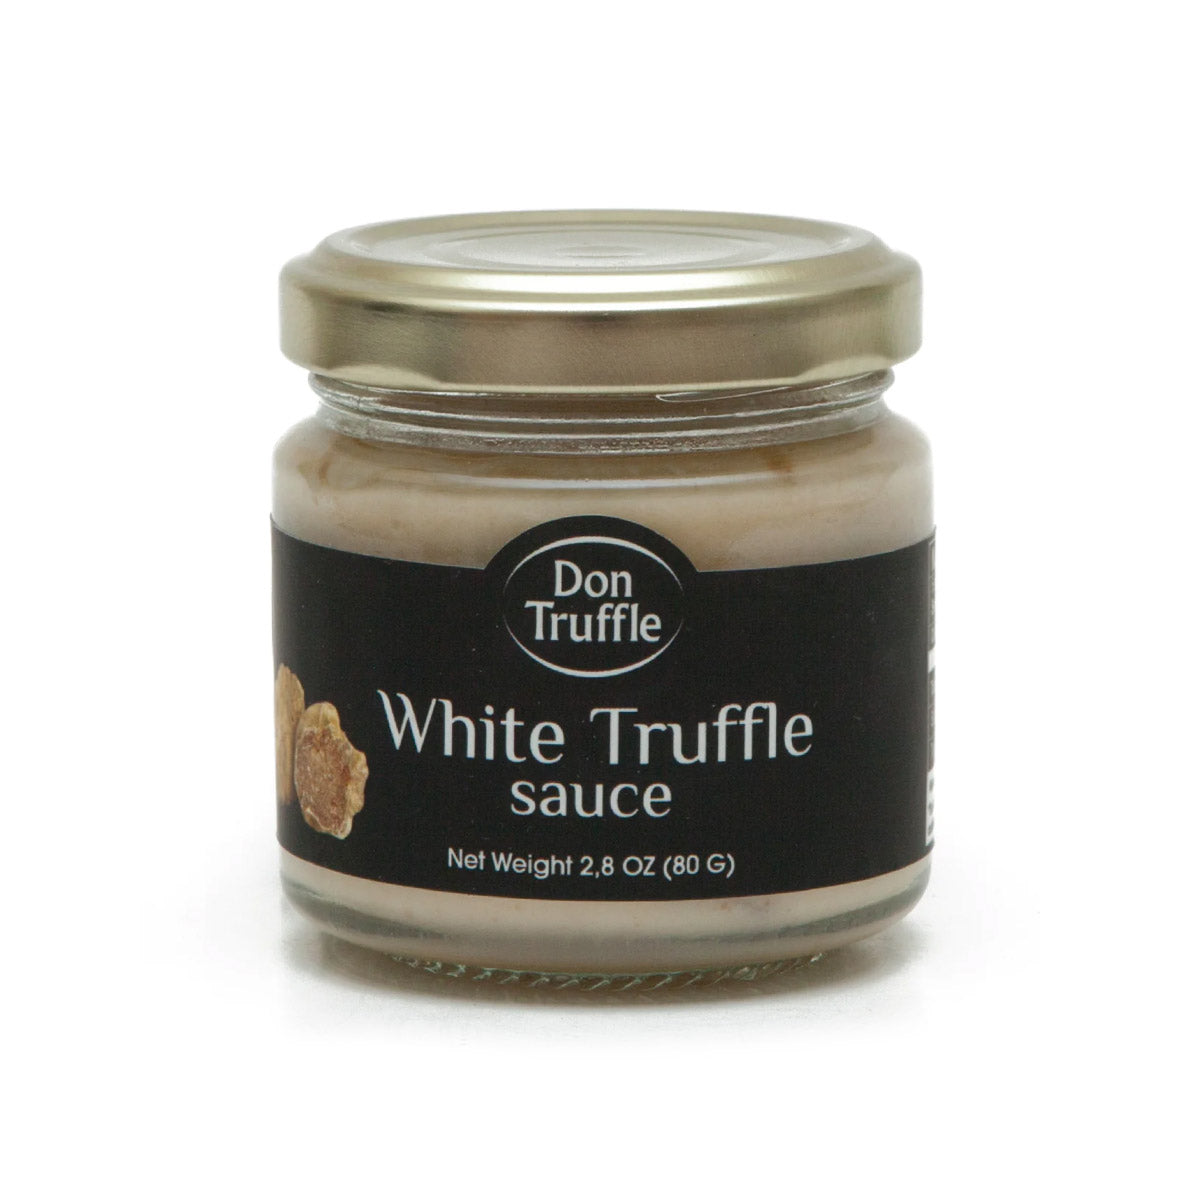 White Truffle Sauce